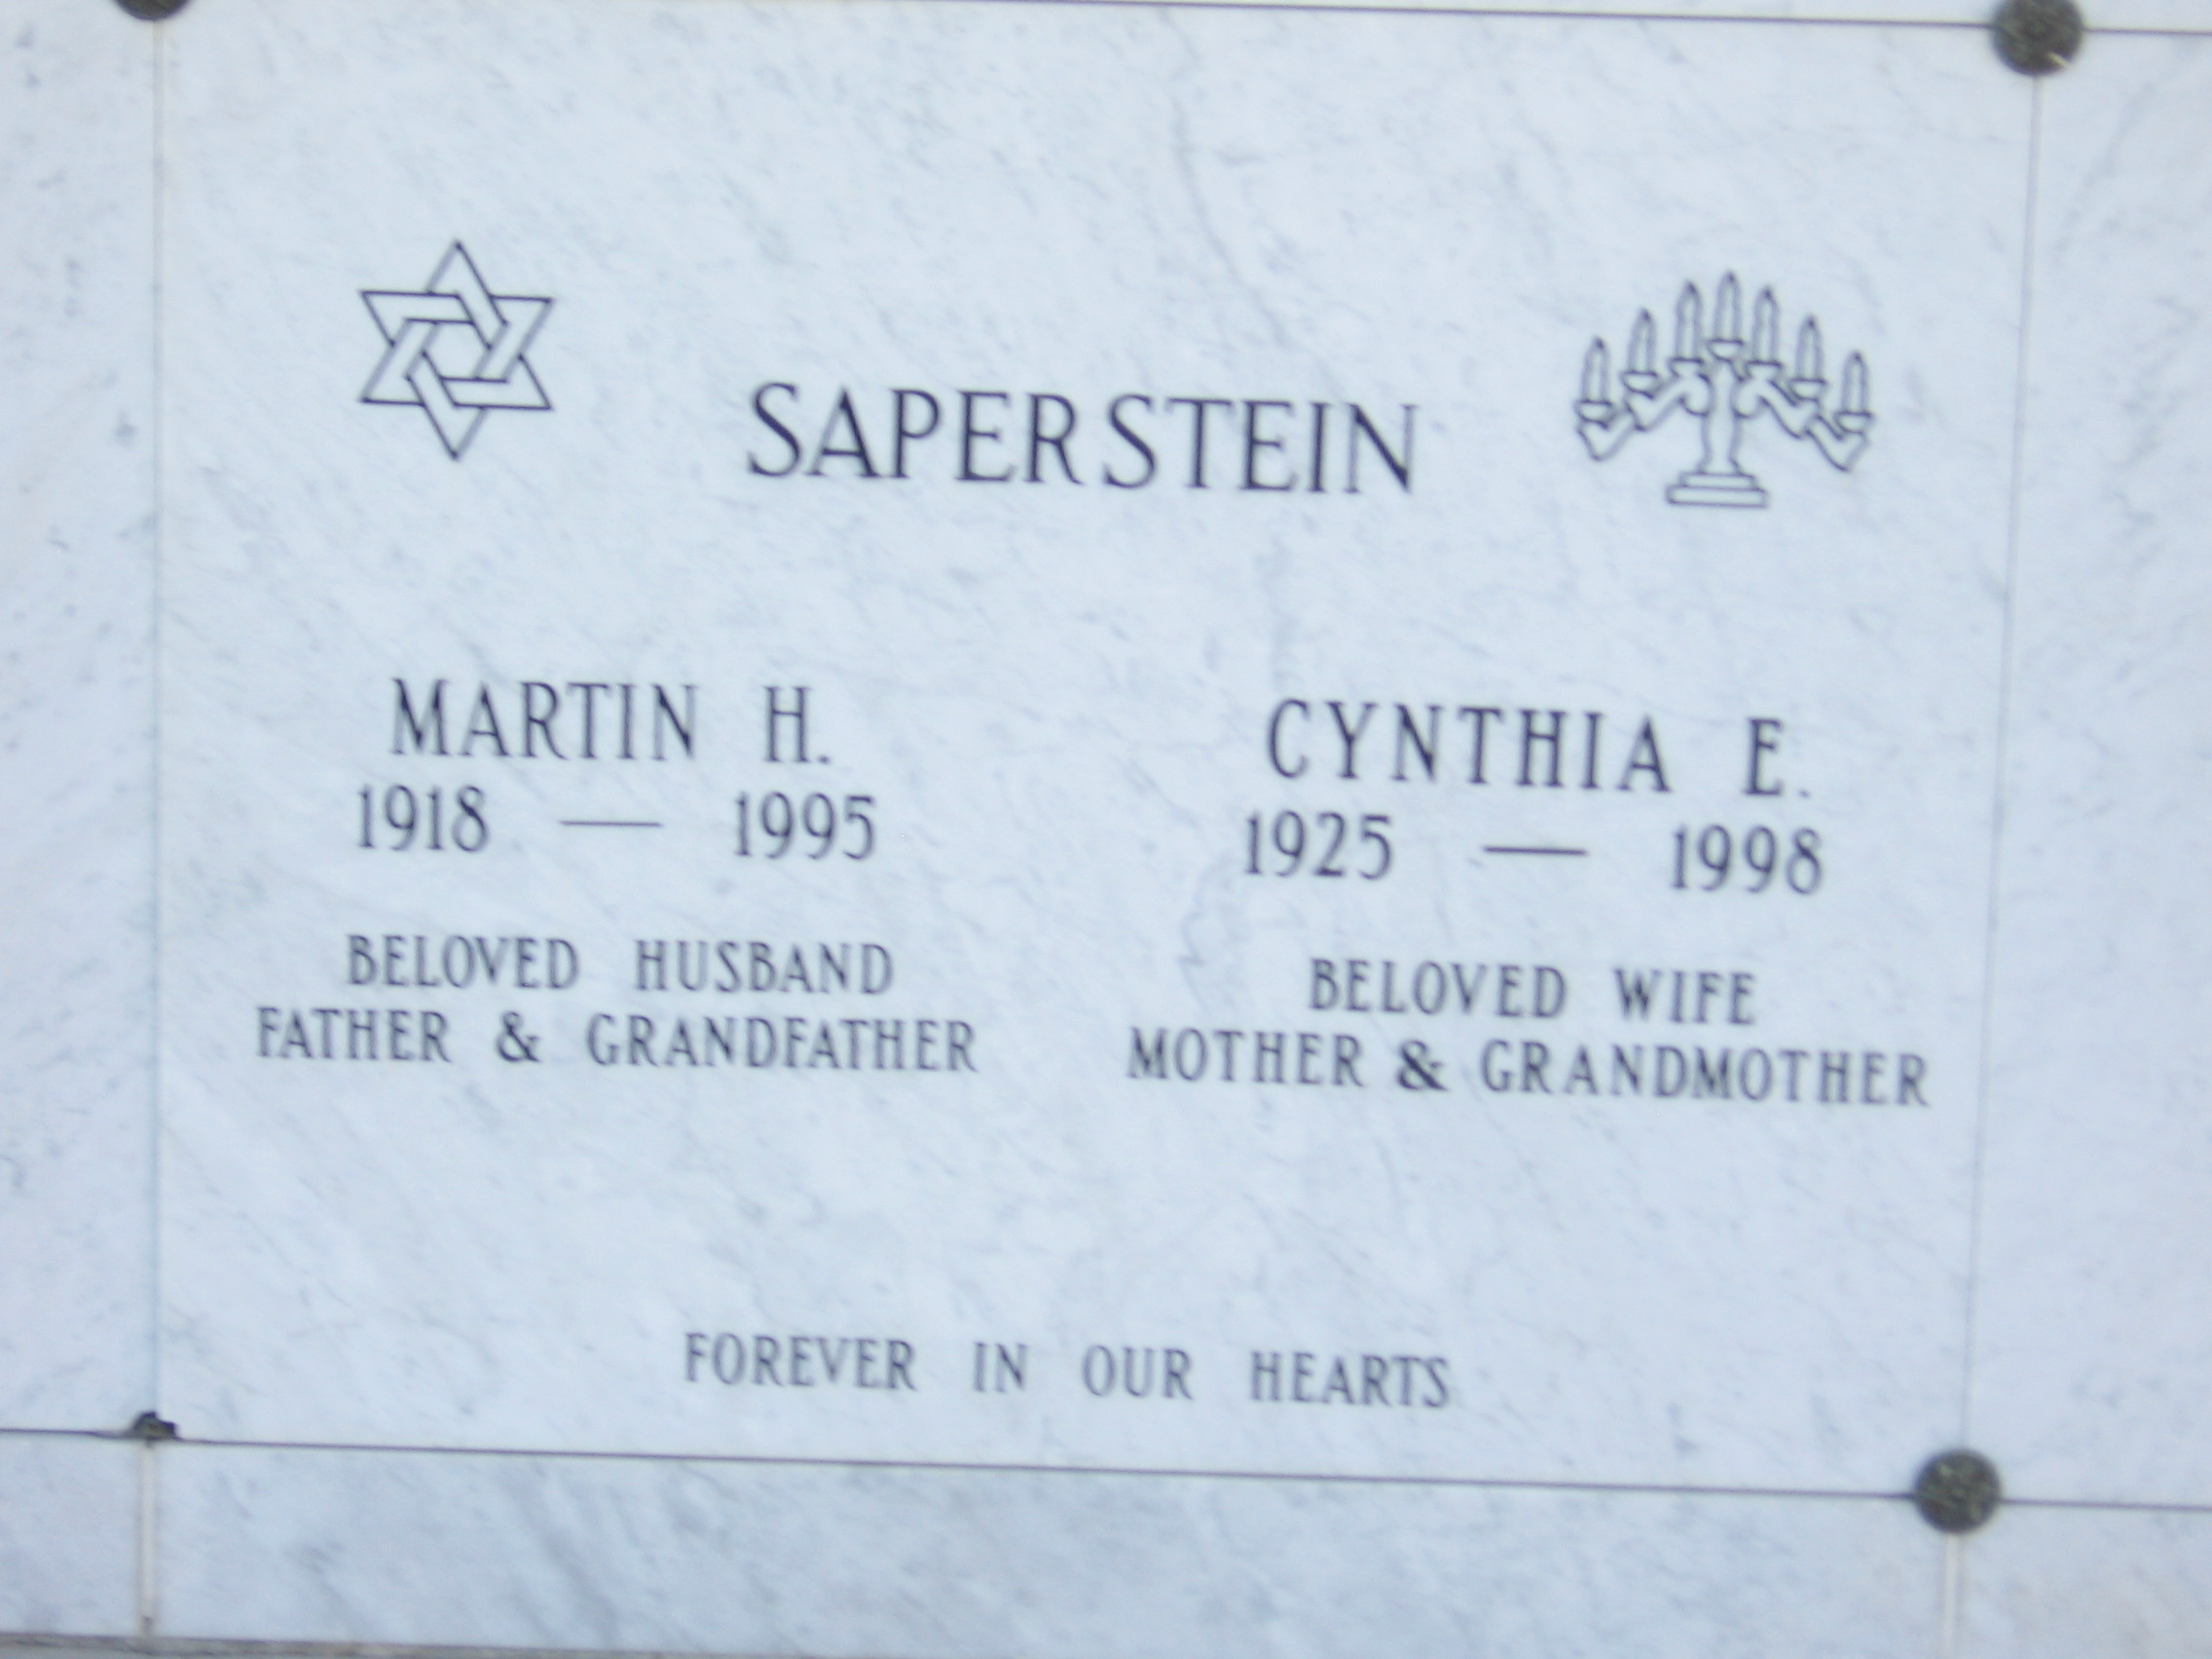 Cynthia E Saperstein